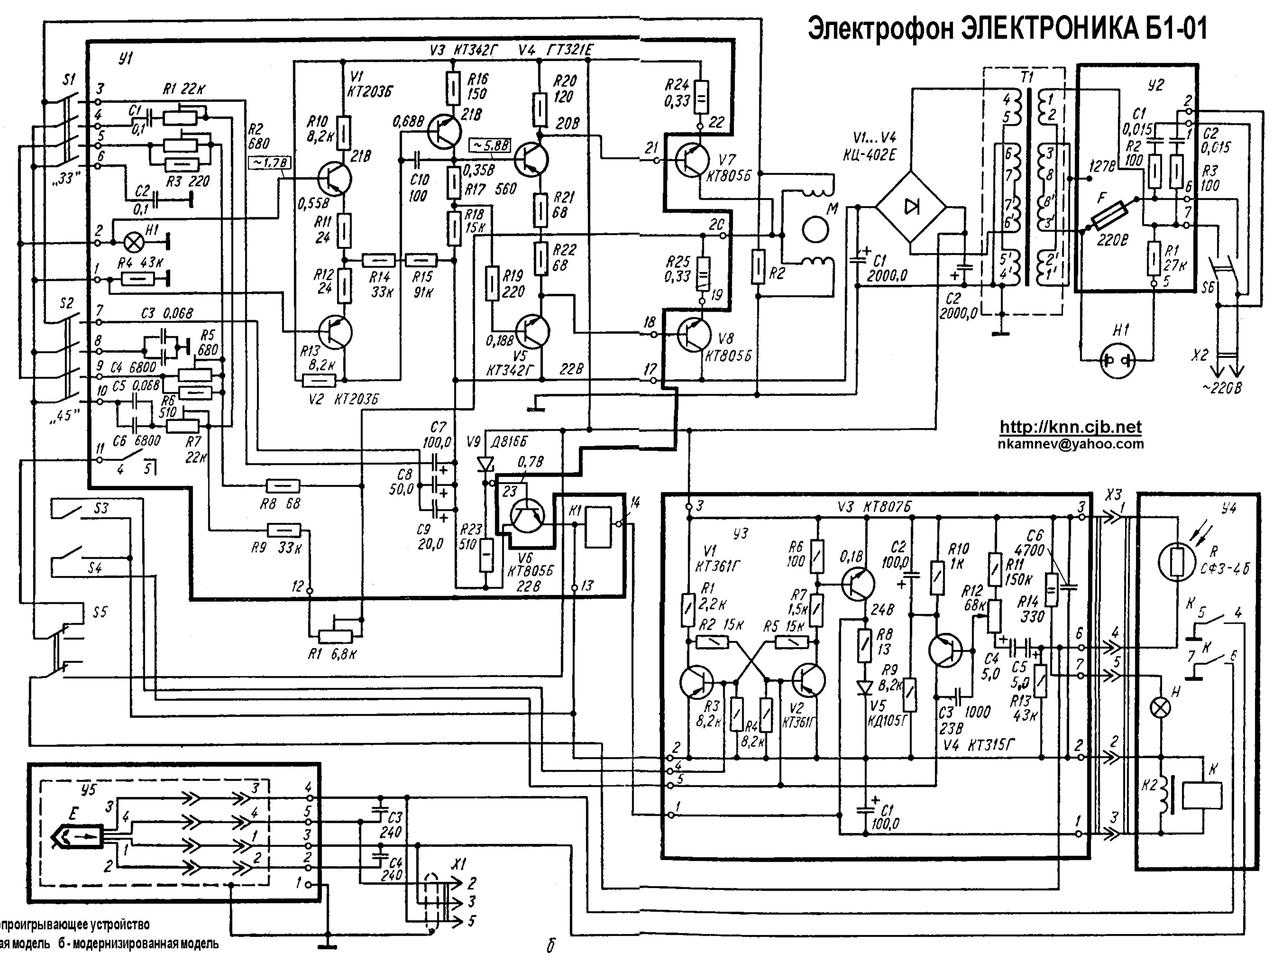 Электроника 060 стерео самый совершенный проигрыватель советской эпохи